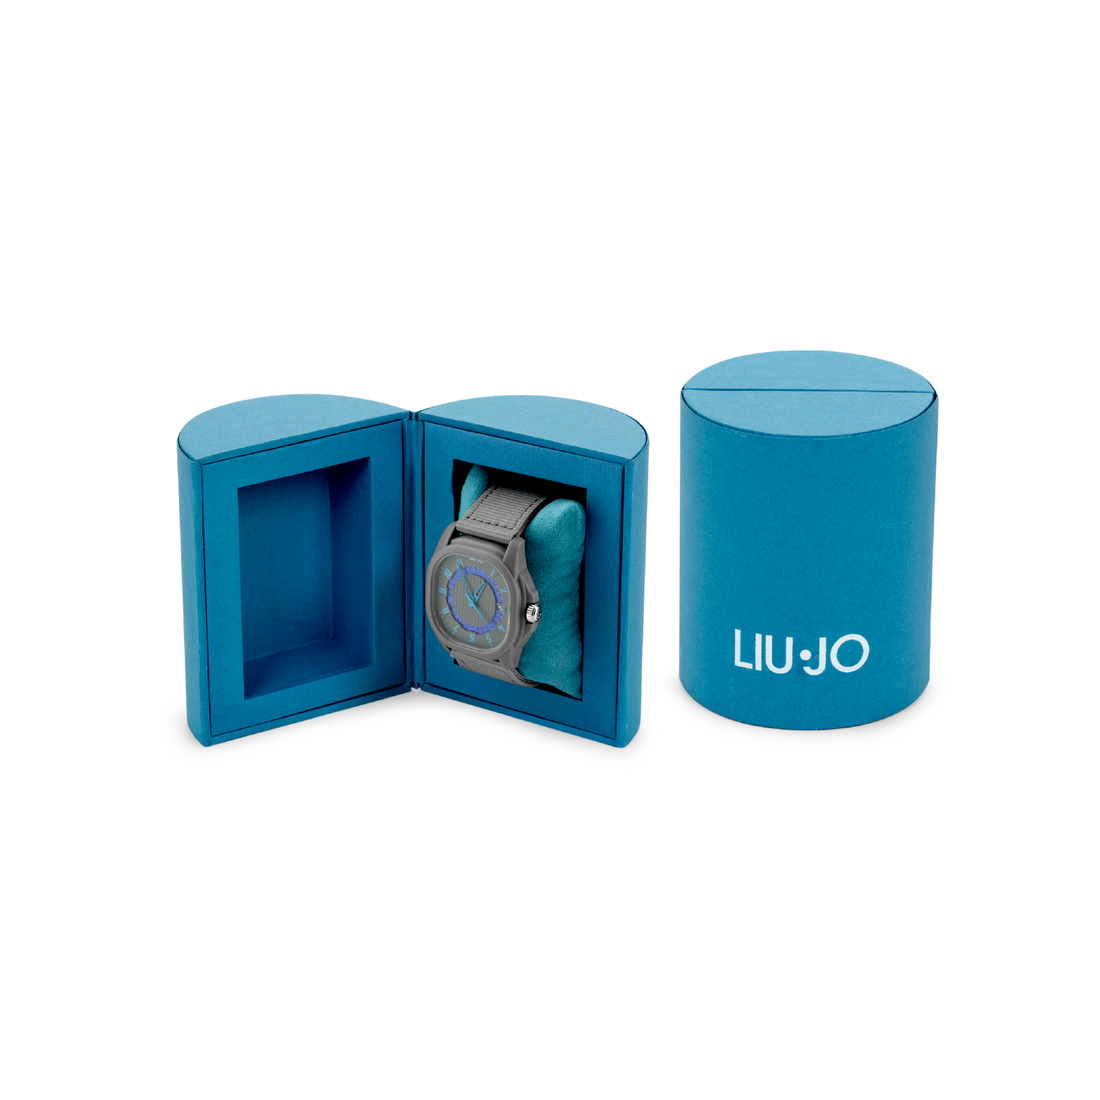 LiuJo Eco Grigio & Blu